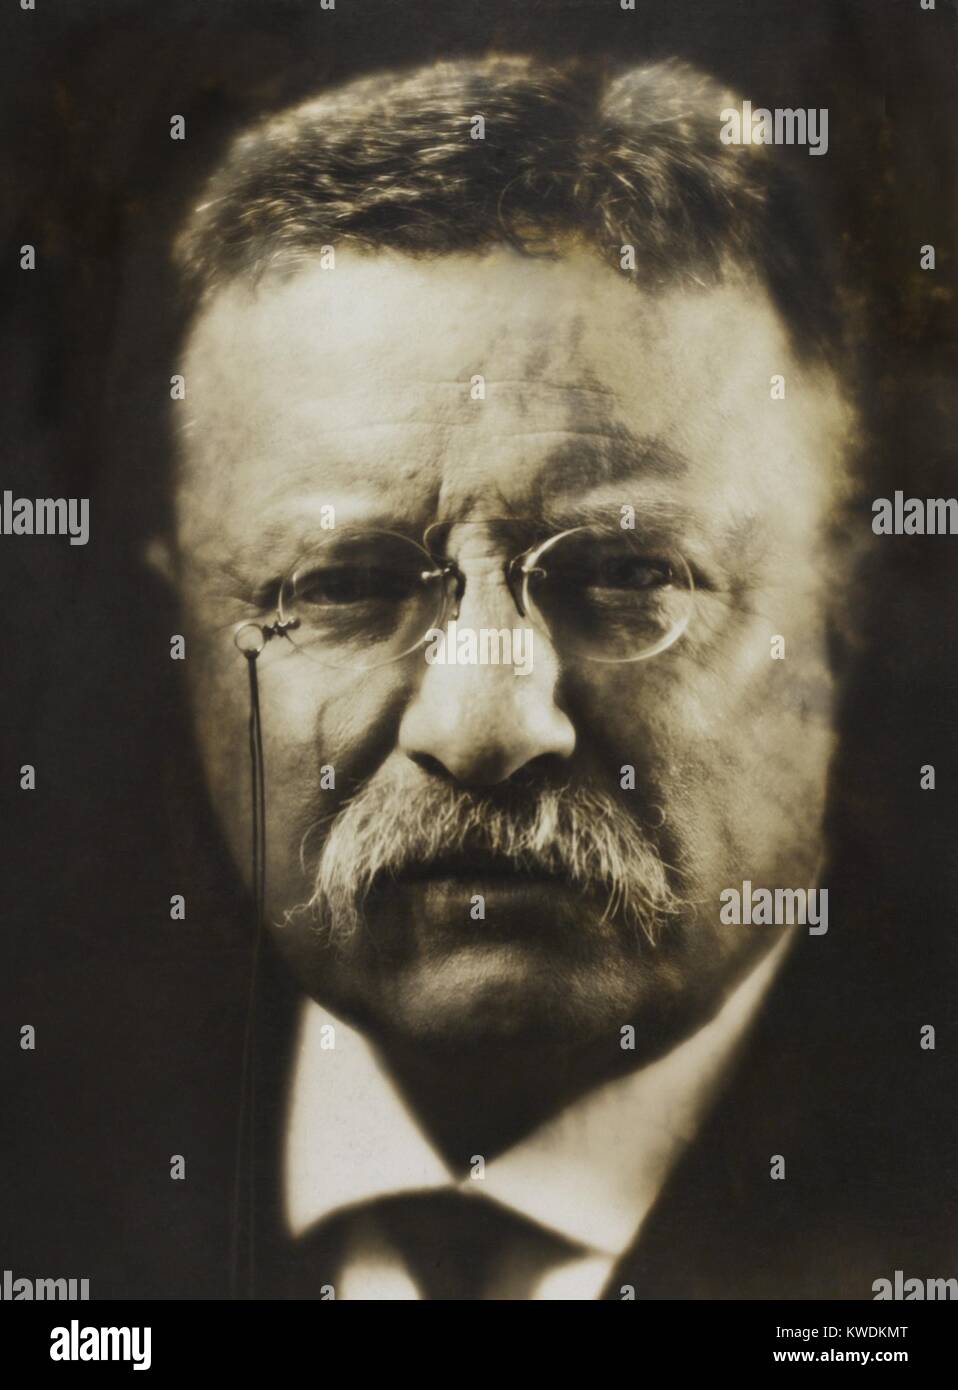 Oberst Theodore Roosevelt, April 1917 vom renommierten Fotografen, Pirie MacDonald. Er fotografierte über 70.000 Männer während seiner Karriere, darunter Staats-, religiöse Führer, und Künstler. Dieser erinnerte er sich an Theodore Roosevelt als seine schwierigste Thema (BSLOC 2017 8 71) Stockfoto